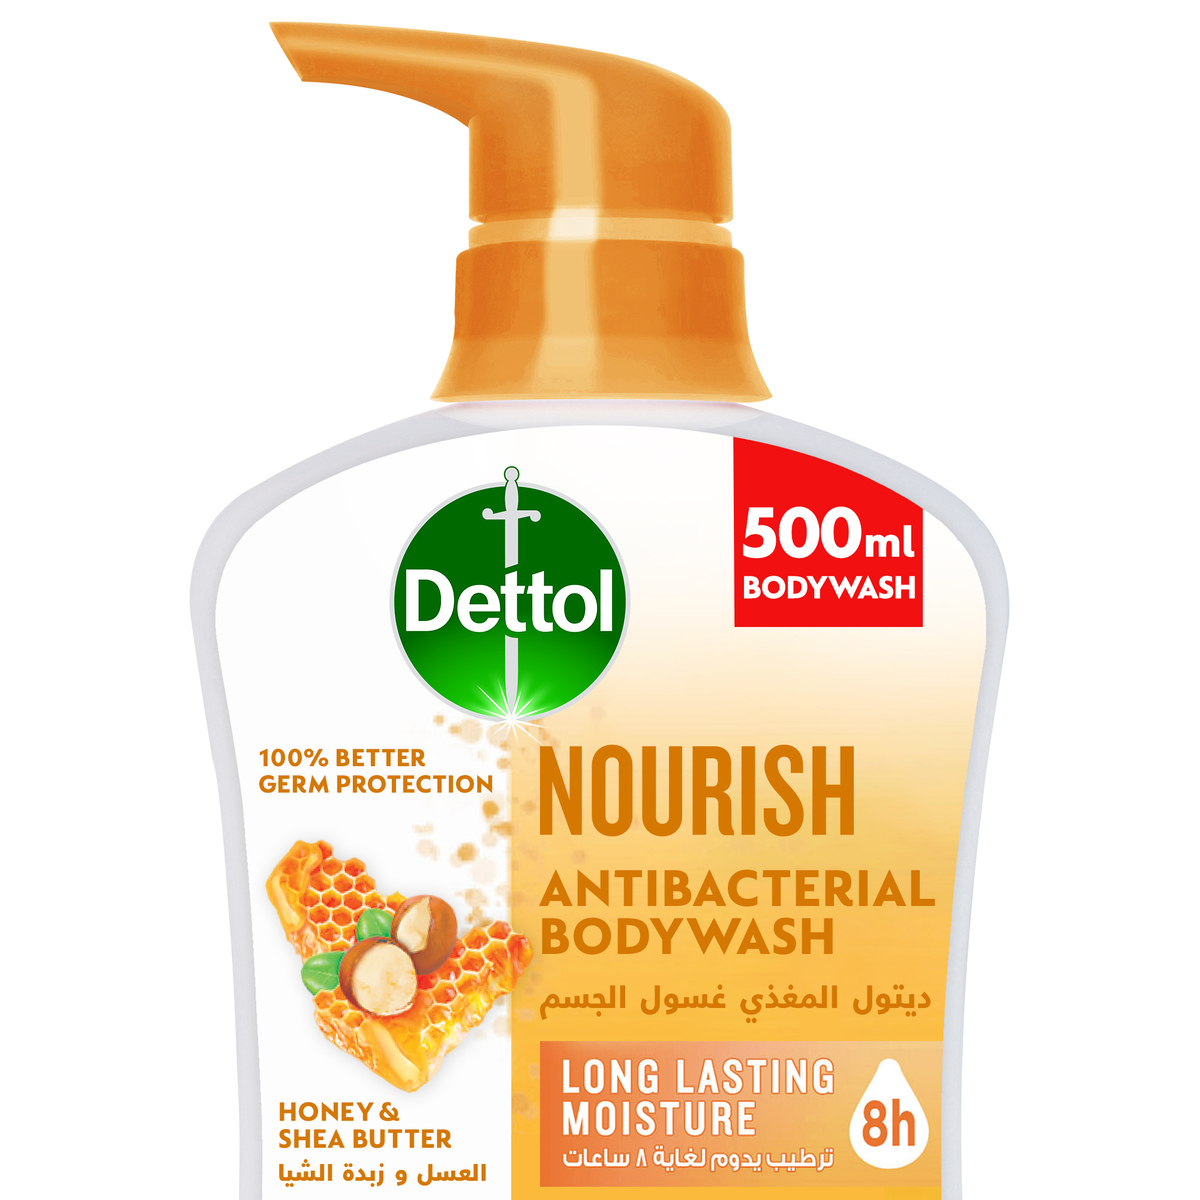 Dettol Anti-Bacterial Body Wash Nourish Honey & Shea Butter 500 ml